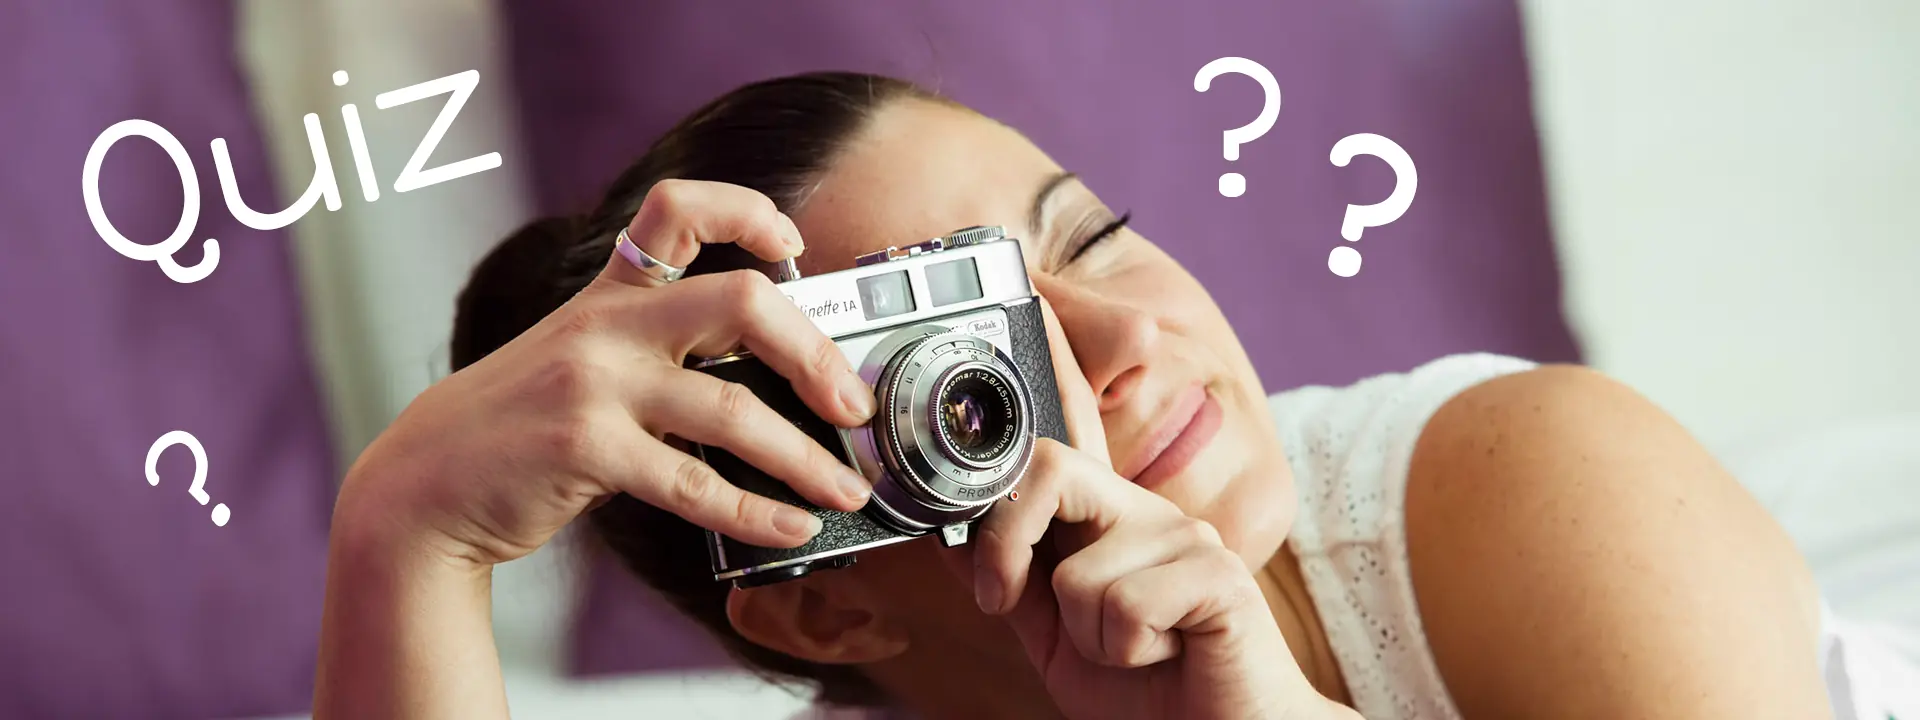 Femme qui souhaite apprendre la photo avec un jeu de quiz photo allongée sur son lit avec un appareil photo numérique dans les mains, question sur la photographie, test de connaissance photo, qcm photo numérique